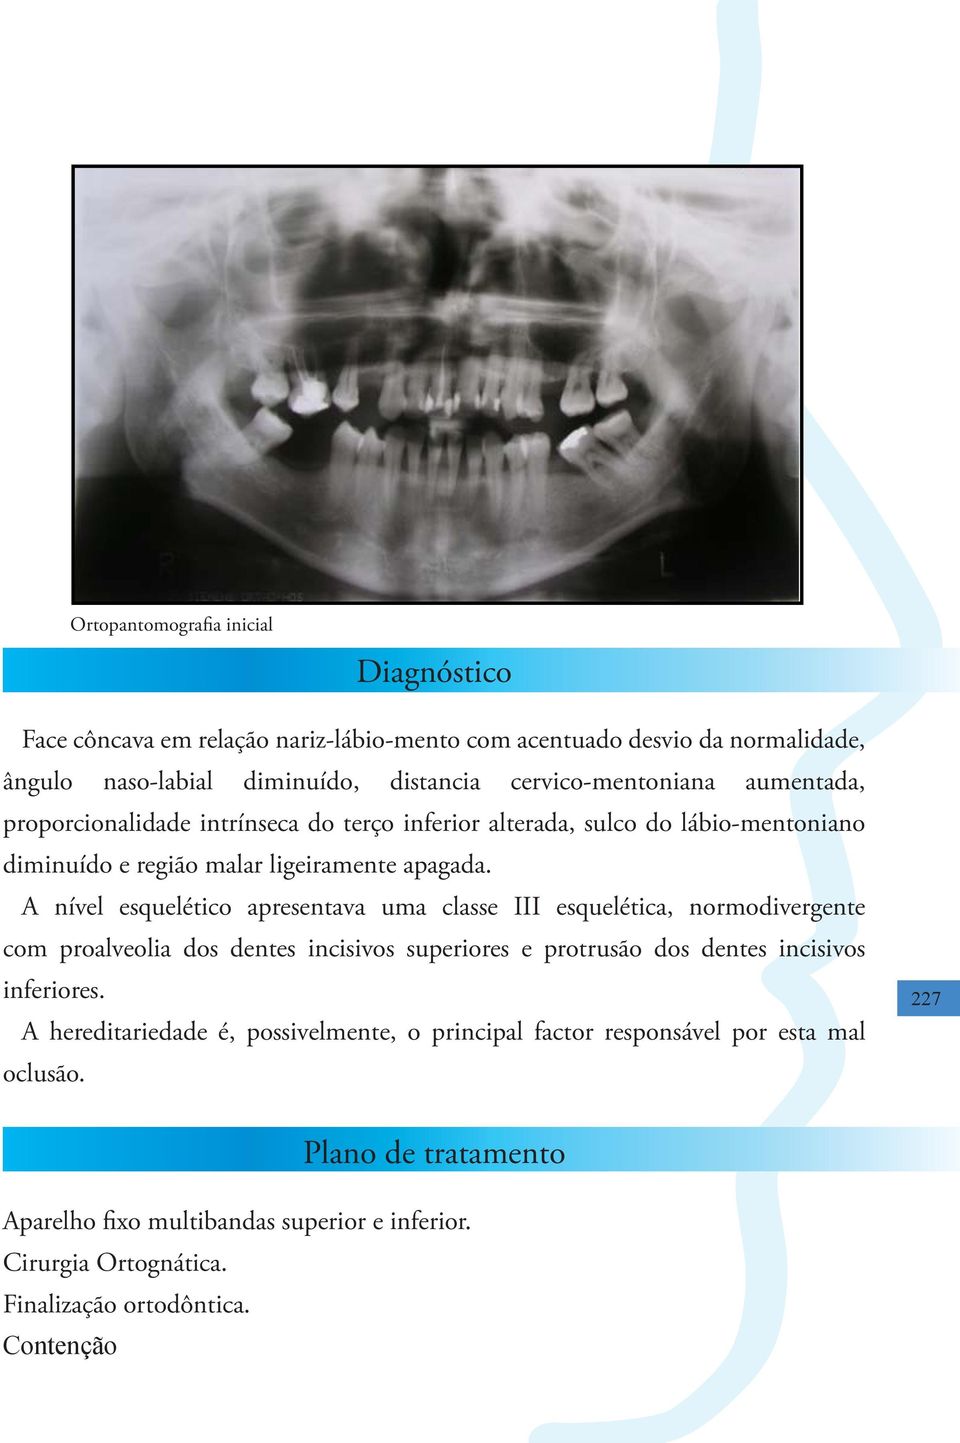 A nível esquelético apresentava uma classe III esquelética, normodivergente com proalveolia dos dentes incisivos superiores e protrusão dos dentes incisivos inferiores.